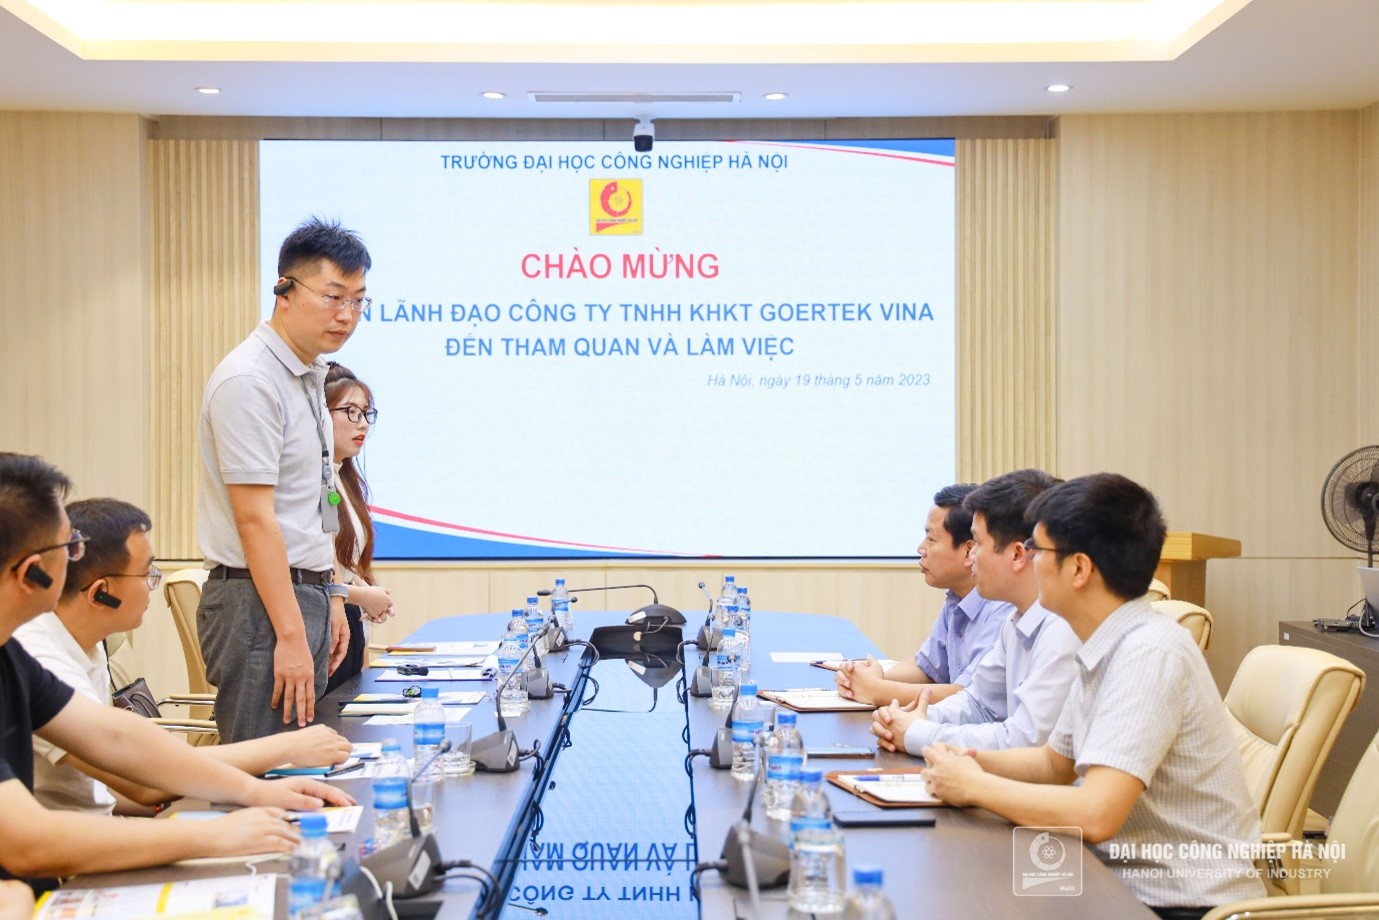 Đại học Công nghiệp Hà Nội tiếp Công ty TNHH KHKT Goertek Vina